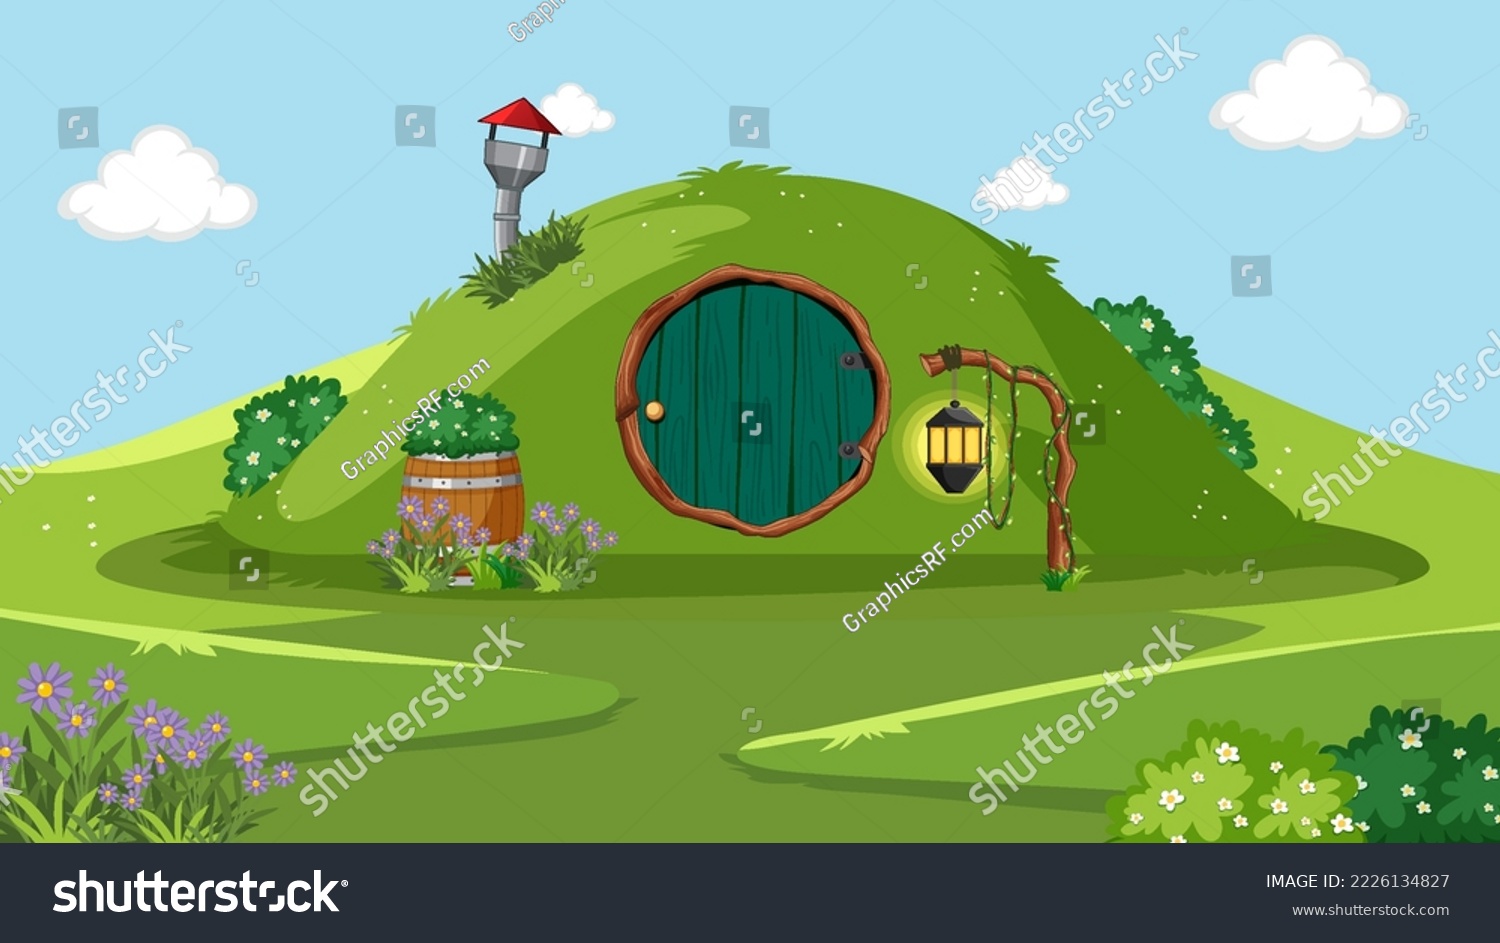 SVG of Fantasy hobbit house background illustration svg